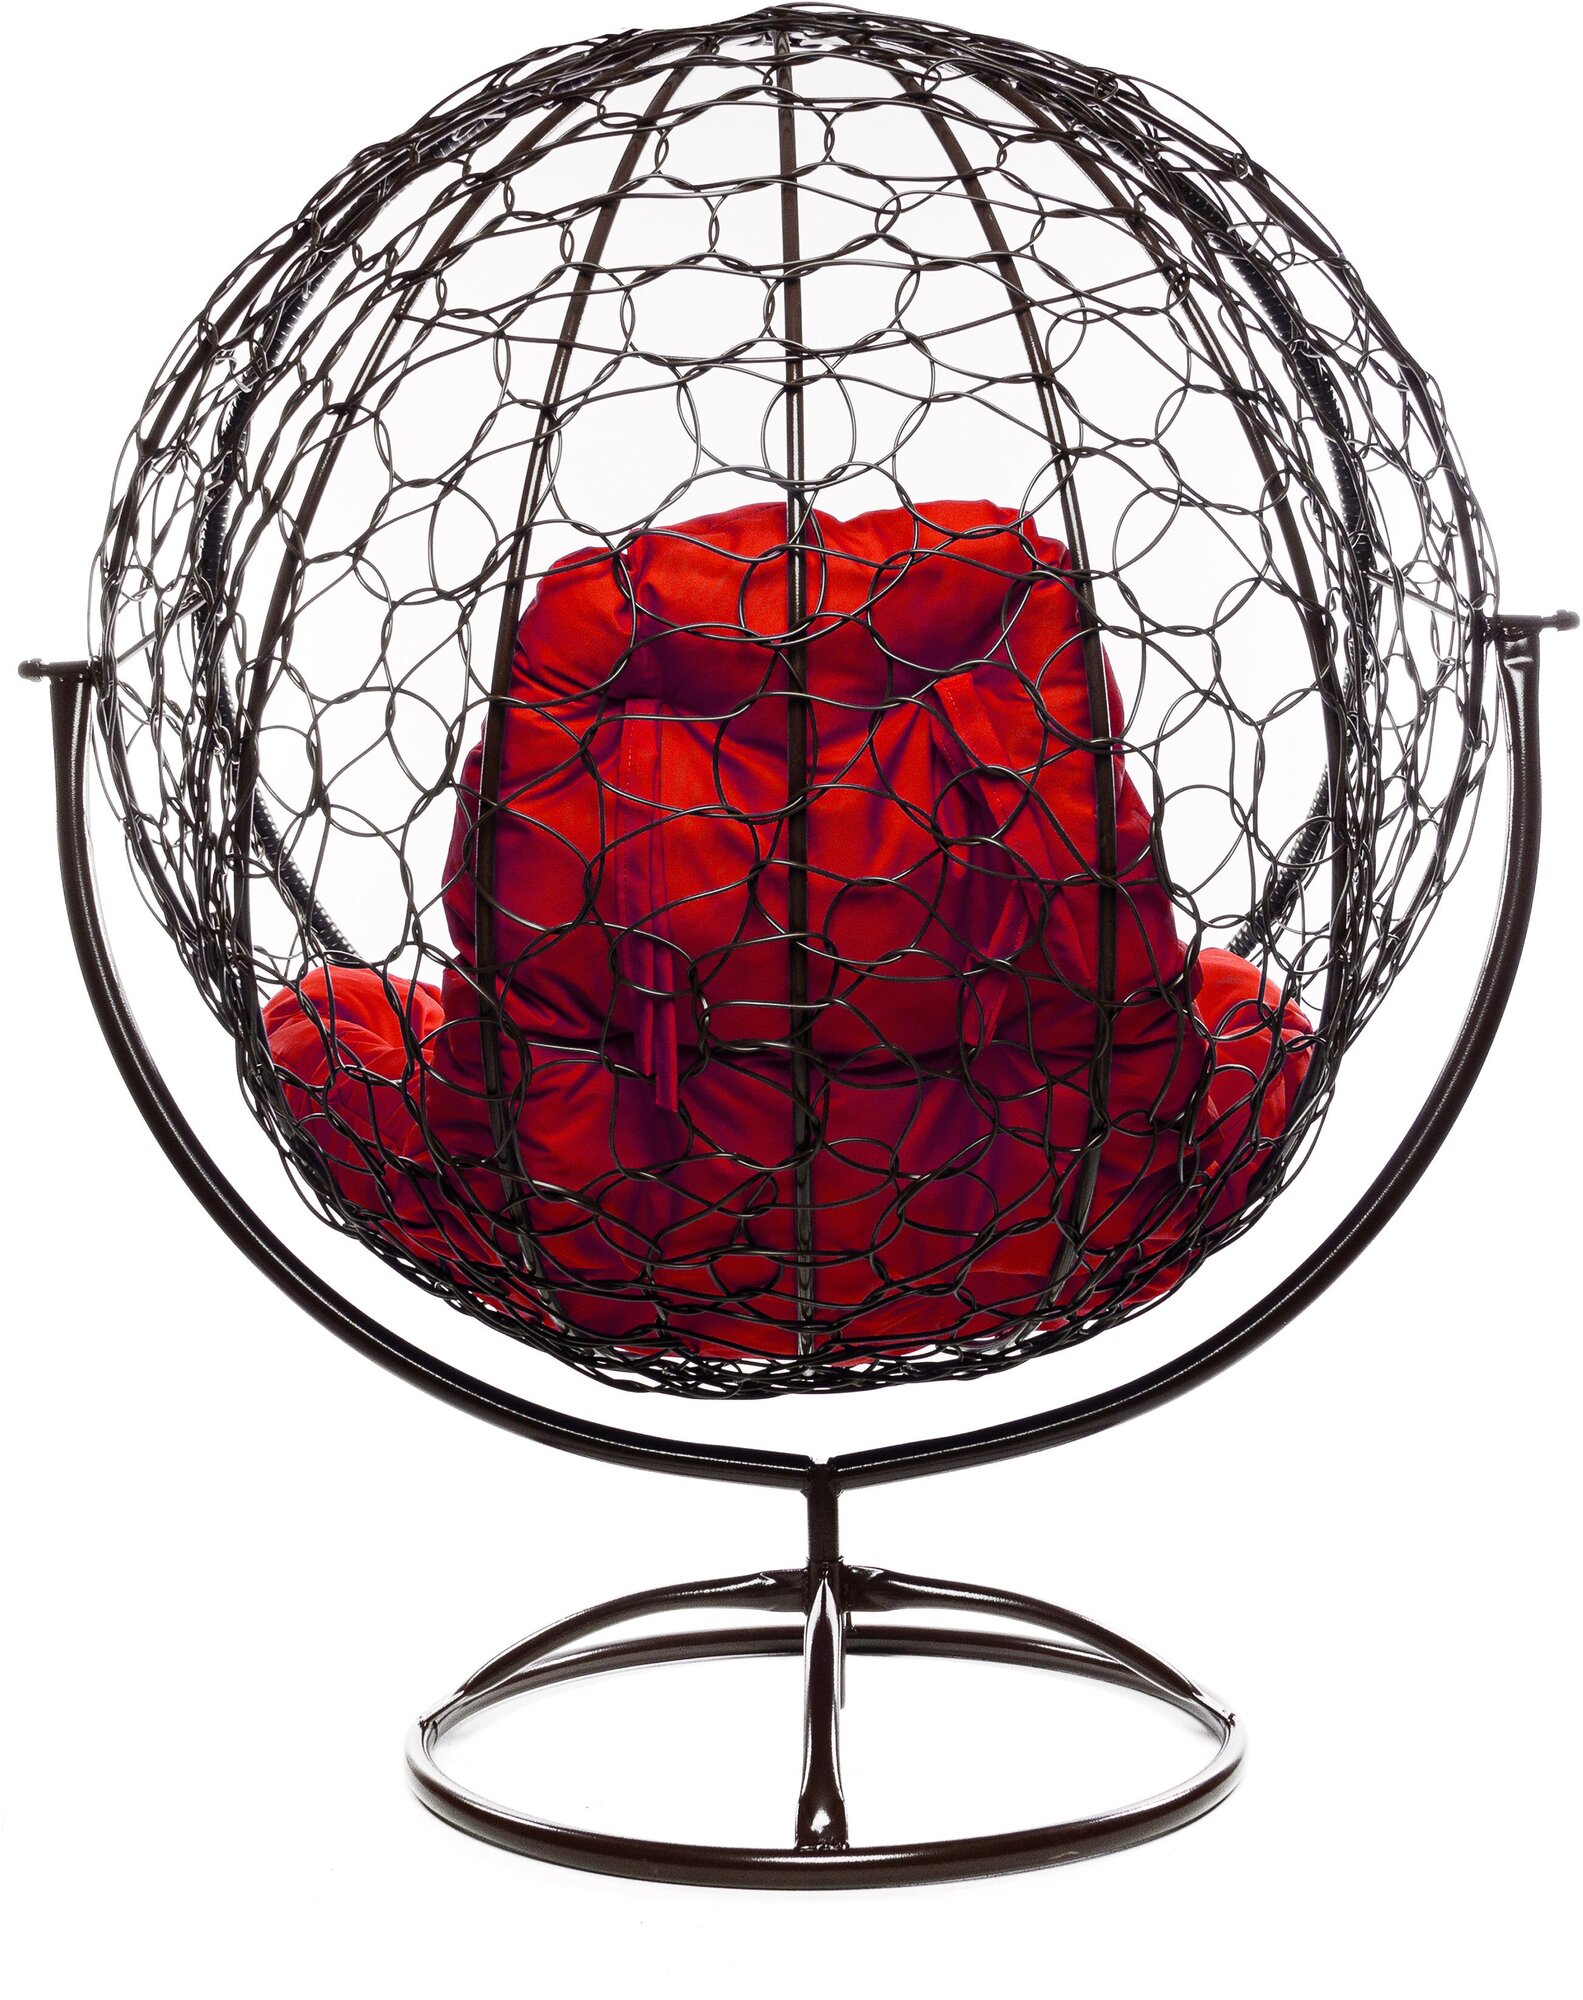 Кресло круглое вращающееся Мебельторг Кокон арт.4762 Коричневый/Подушка красная